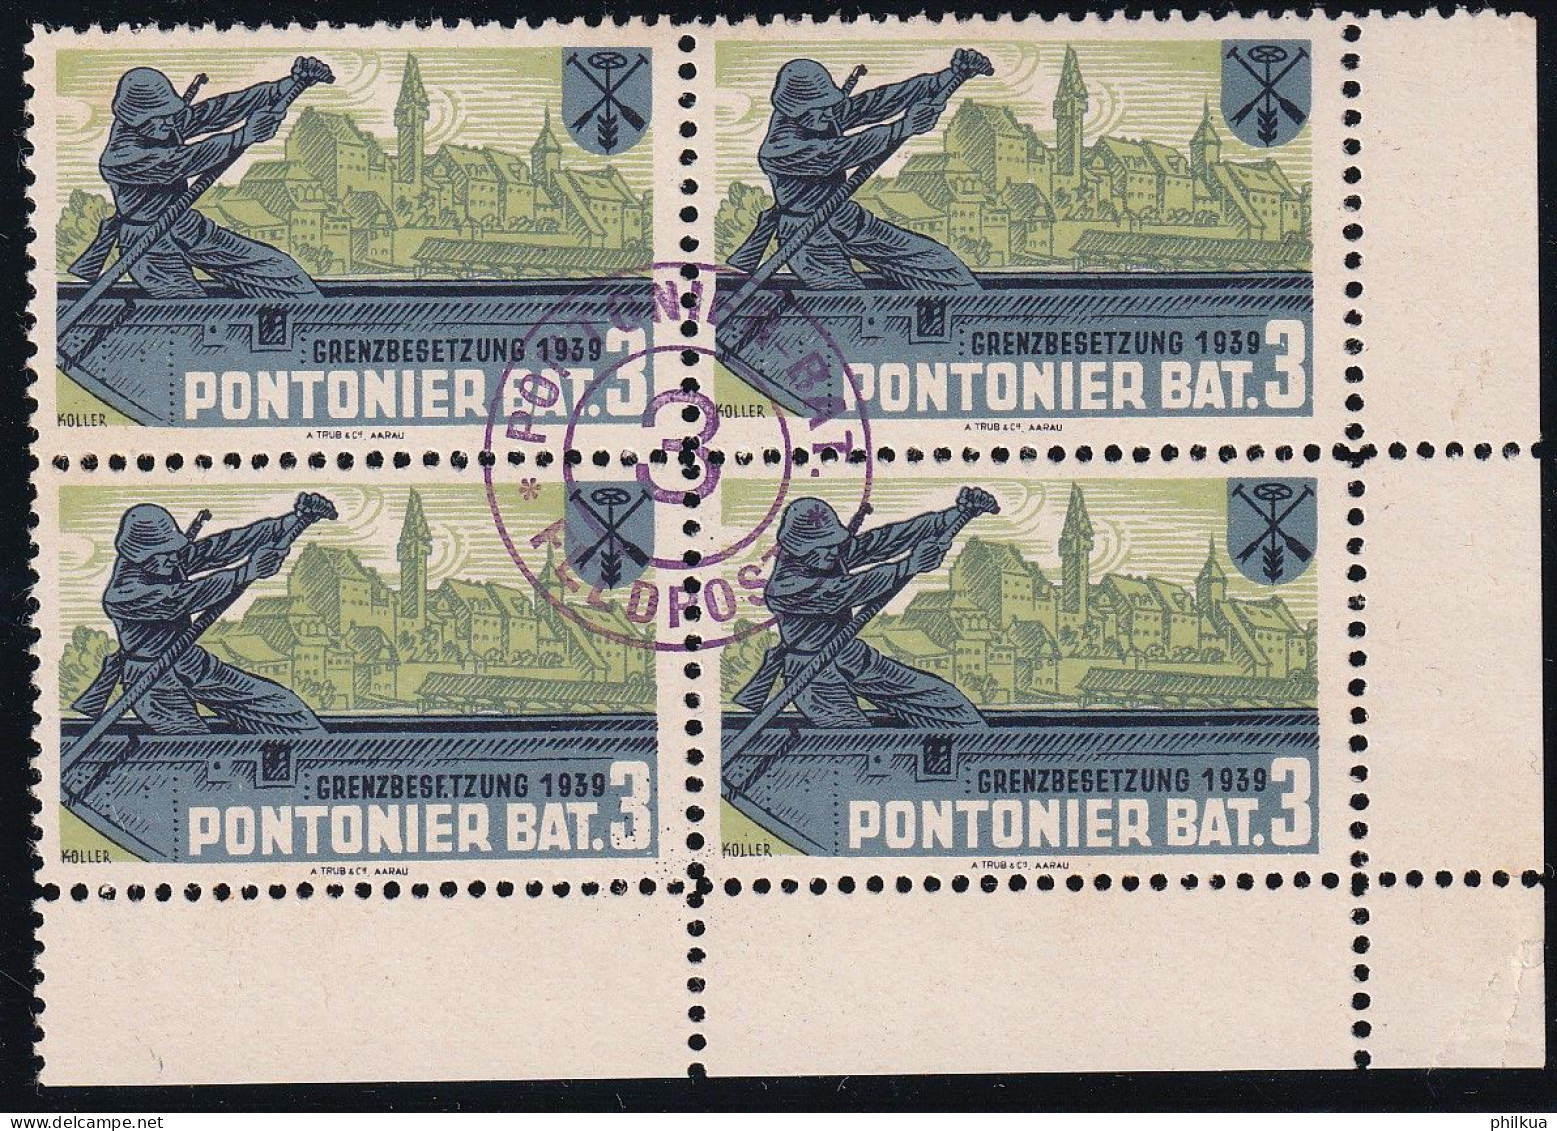 Pontoniere 27 Gezähnter Vierer Block - Pontonier Bat. 3 - Mit Truppemstempel - Postfrisch/**/MNH - Viñetas